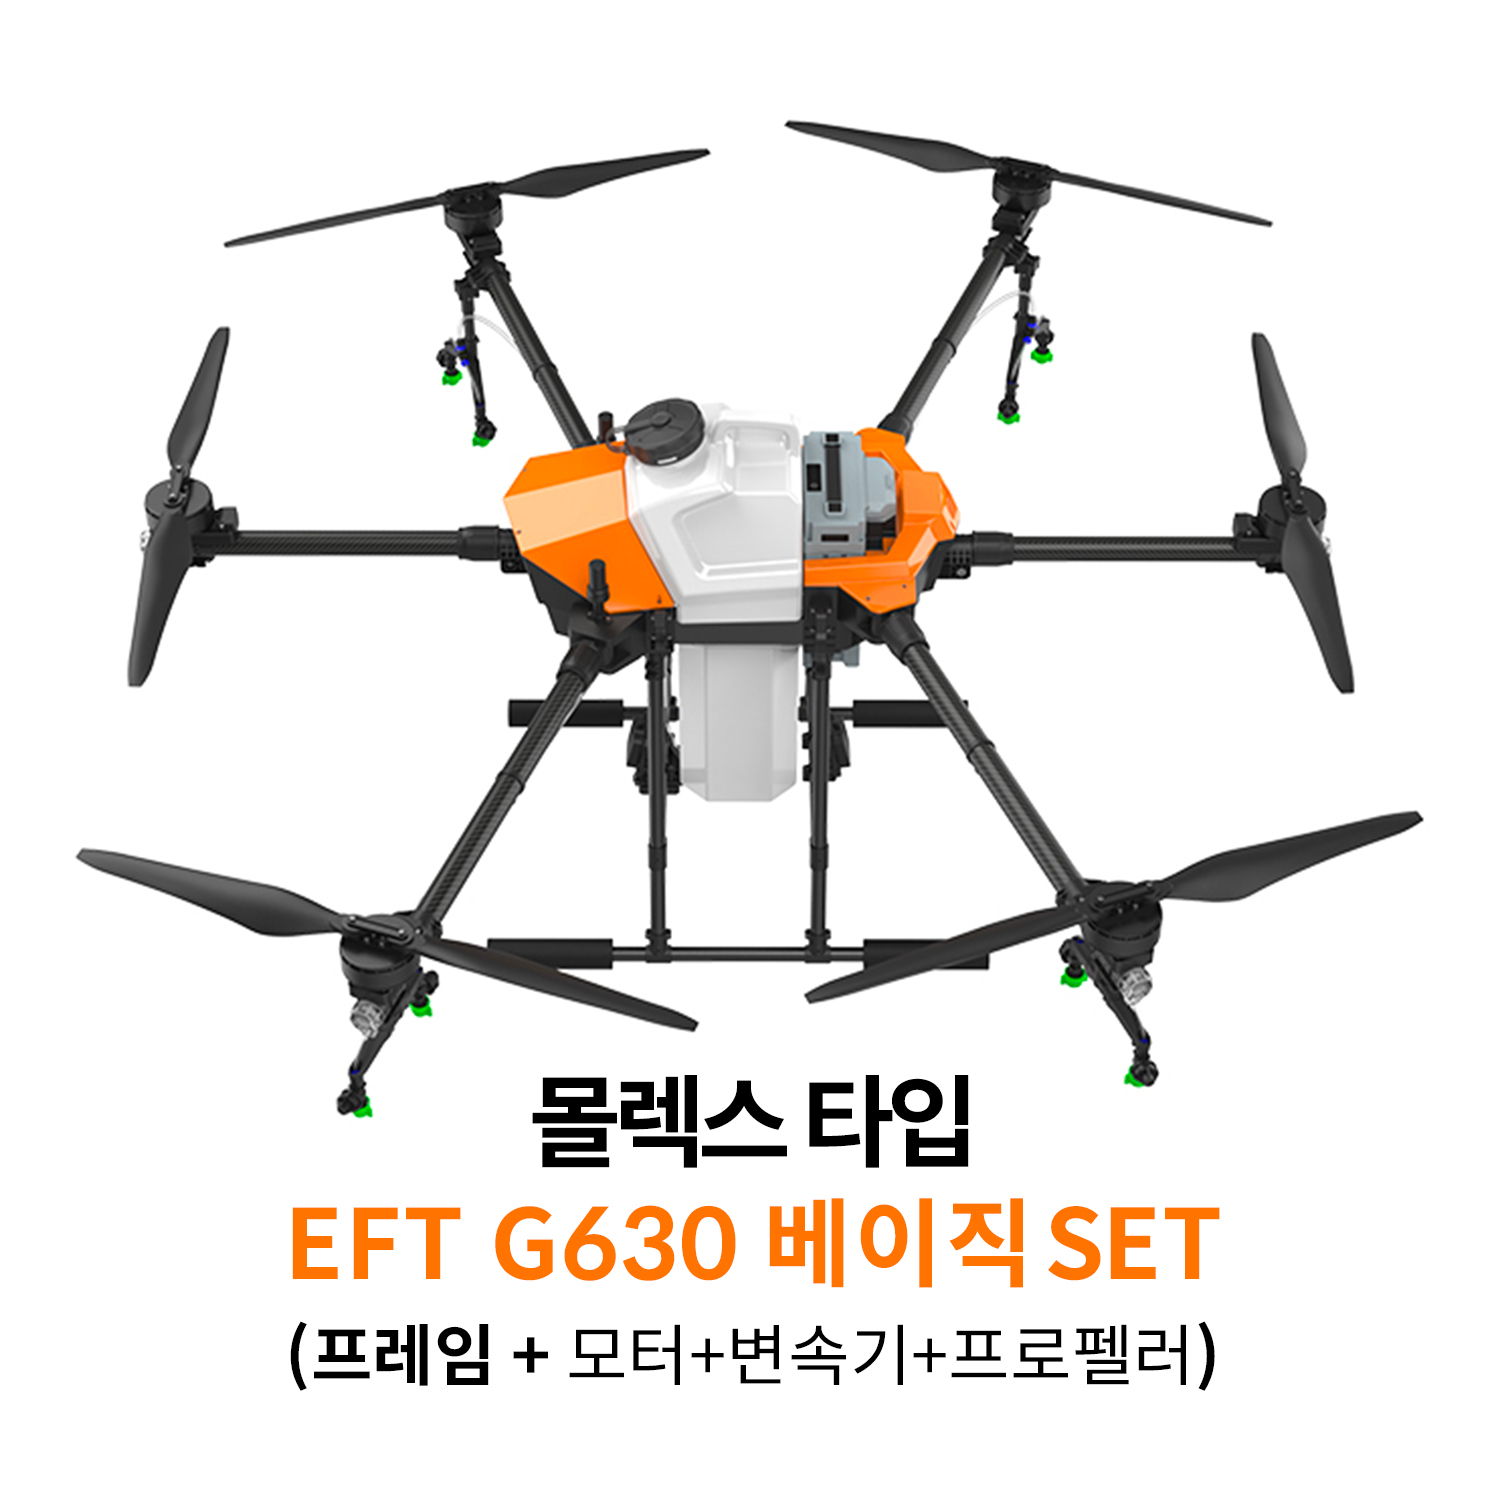 [당일출고]EFT G630 몰렉스 타입 베이직 SET 농업 방제드론 - 스마트 3.0 배터리 전용 프레임 헬셀